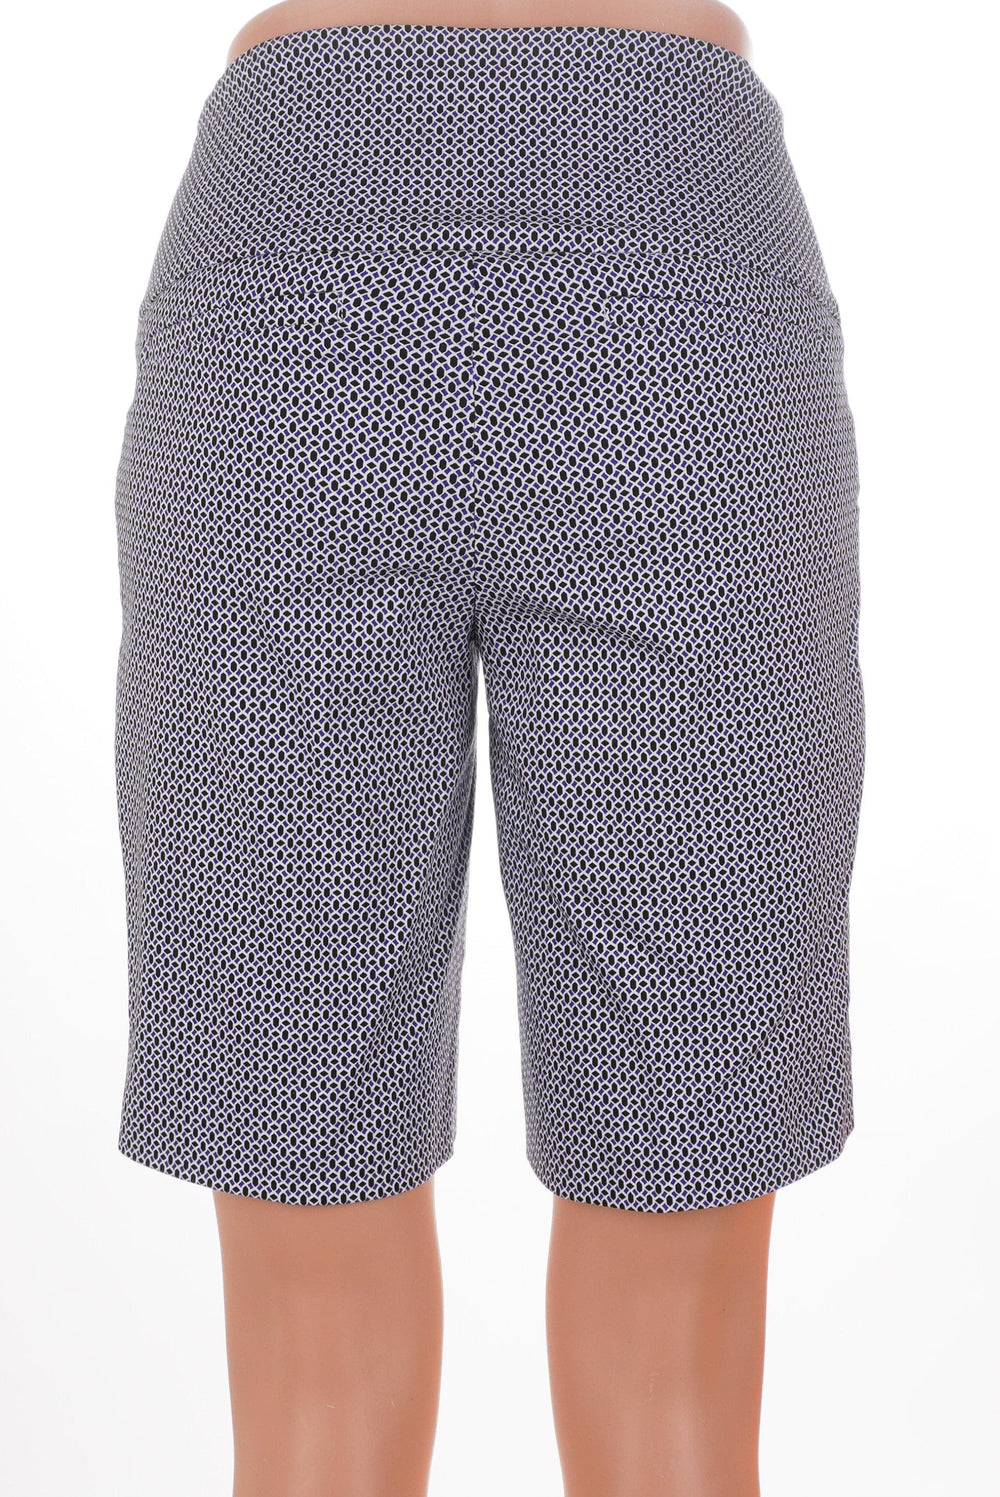 Swing Control Window Masters Bermuda Shorts - Size 0 - Skorzie